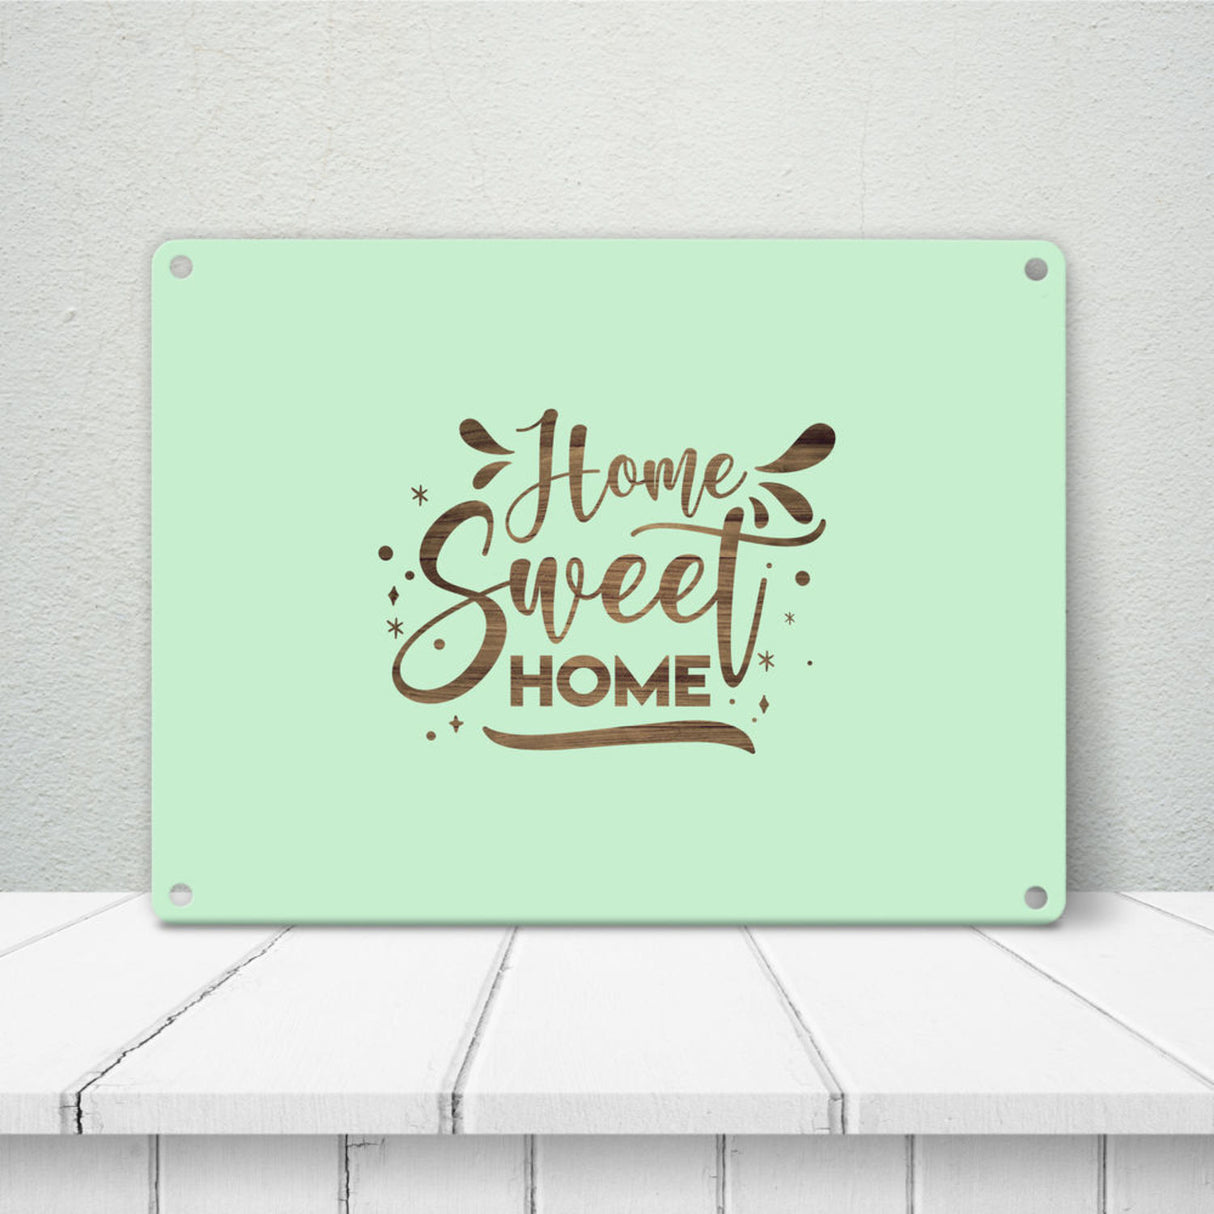 Home Sweet Home Metallschild in 15x20 cm mit hellblauem Hintergrund